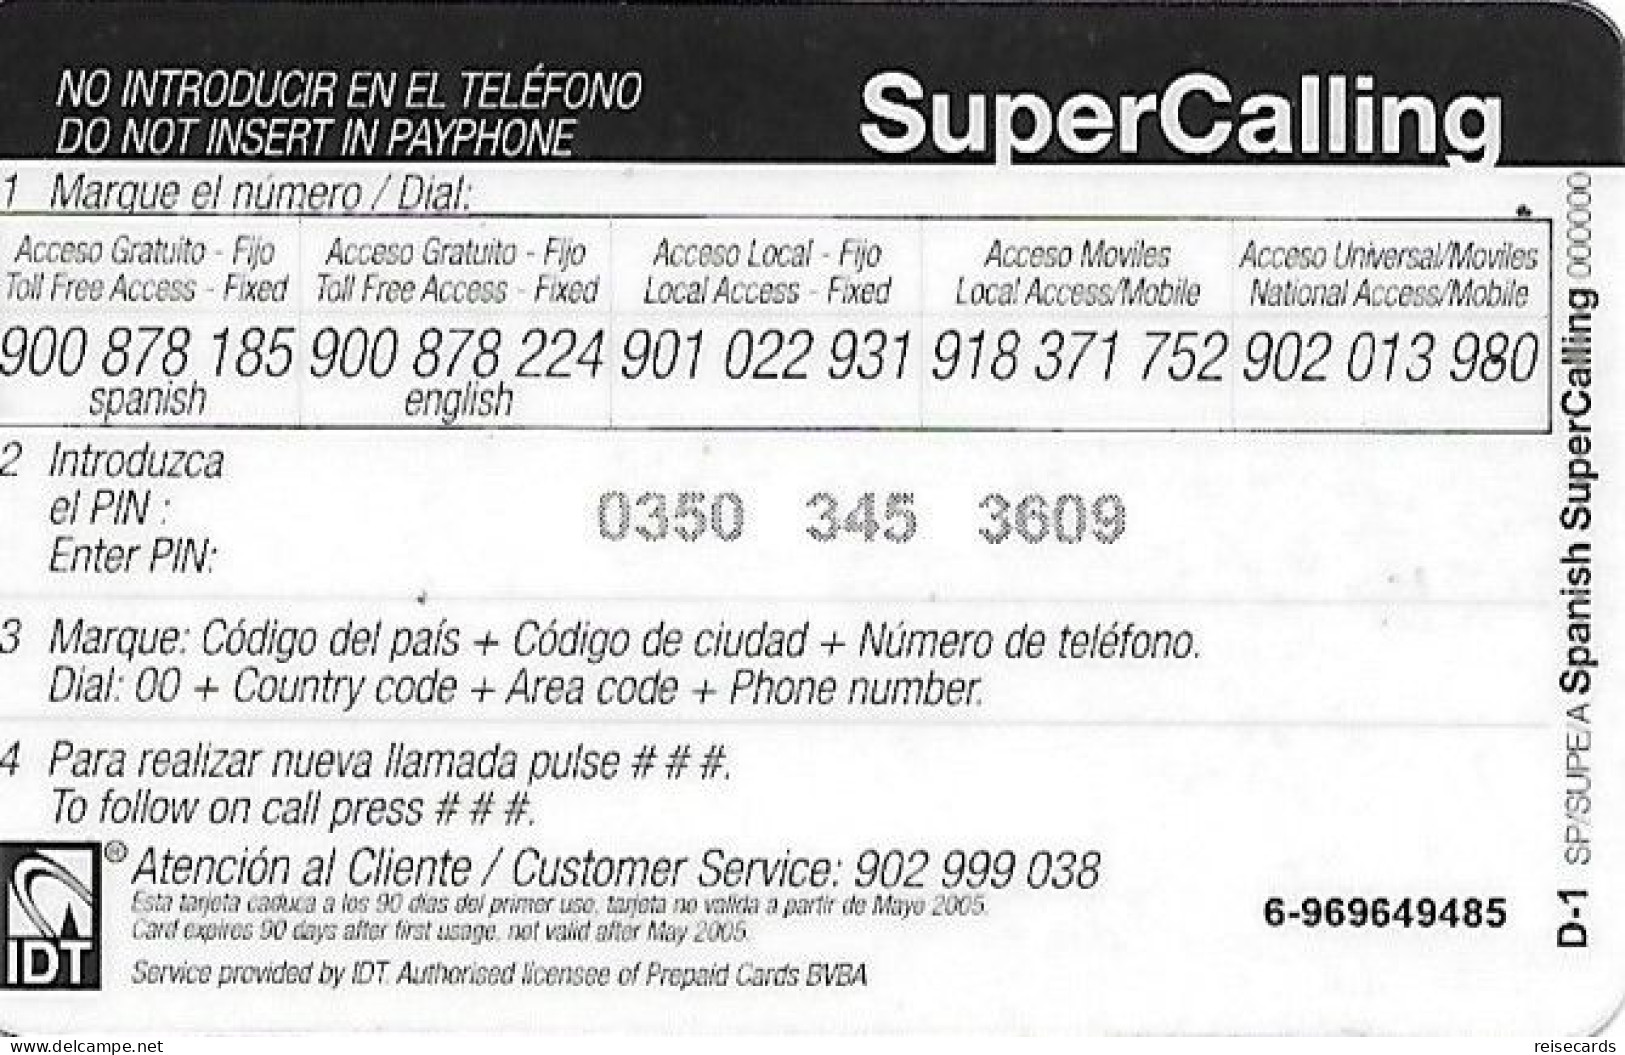 Spain: Prepaid IDT - SuperCall € 6 05.05 - Autres & Non Classés